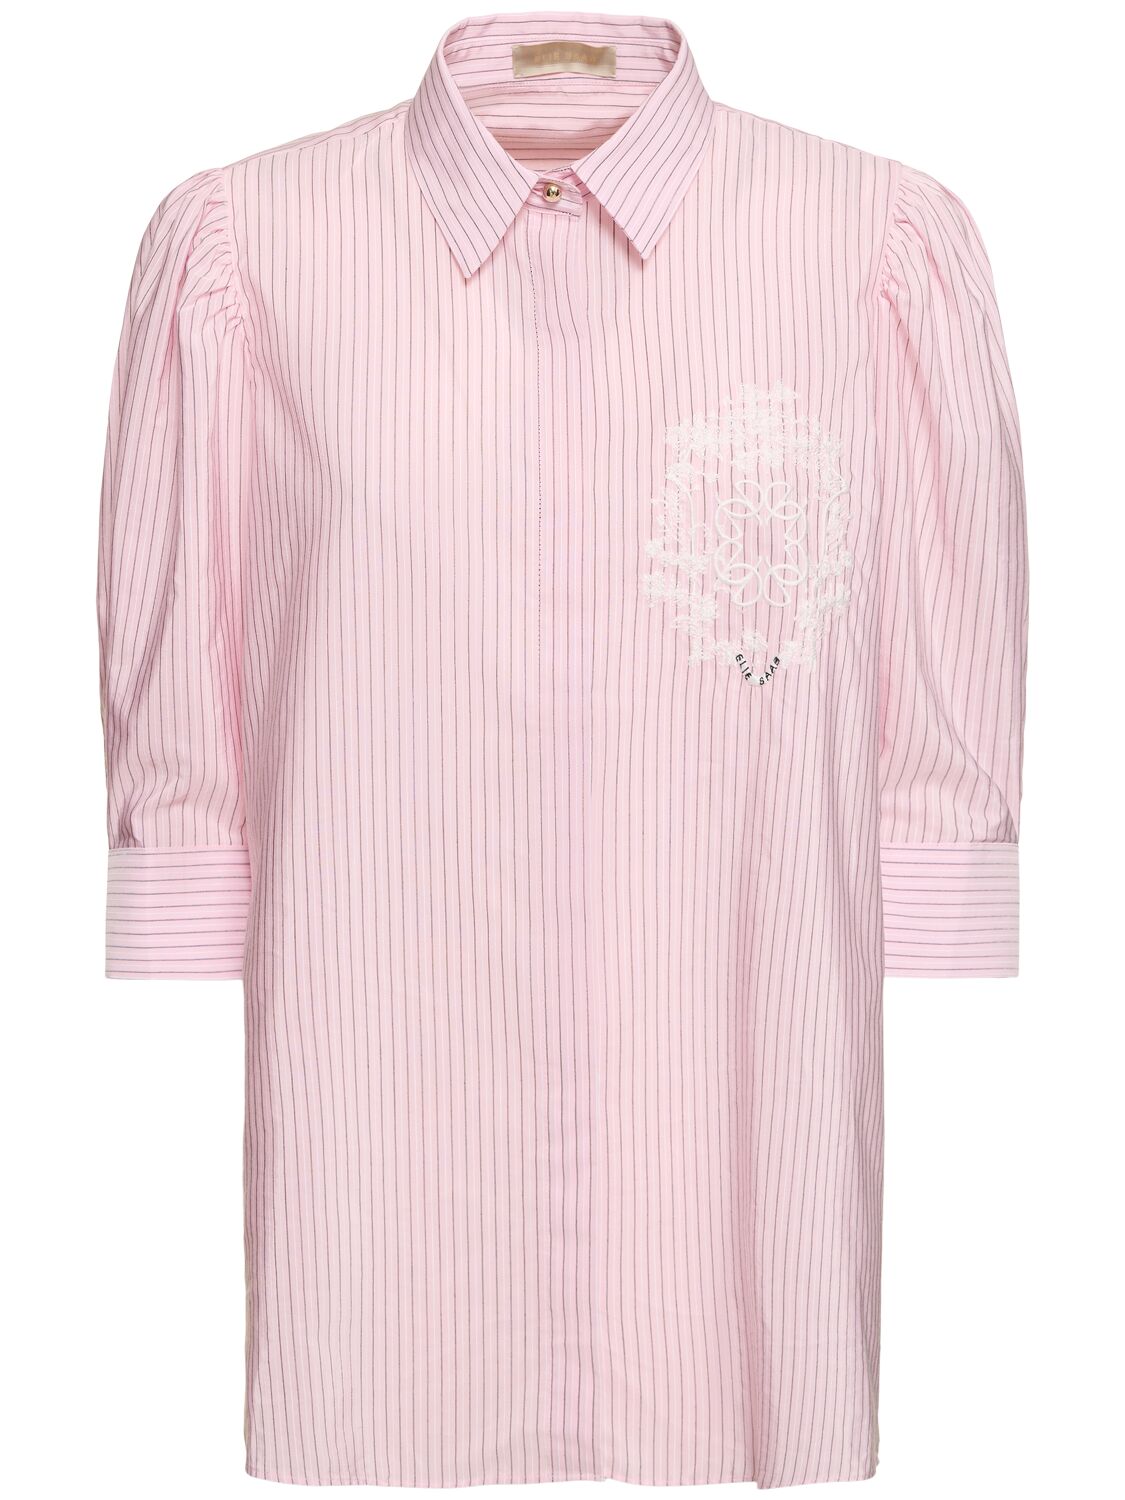 Elie Saab Striped Poplin Shirt In White,pink